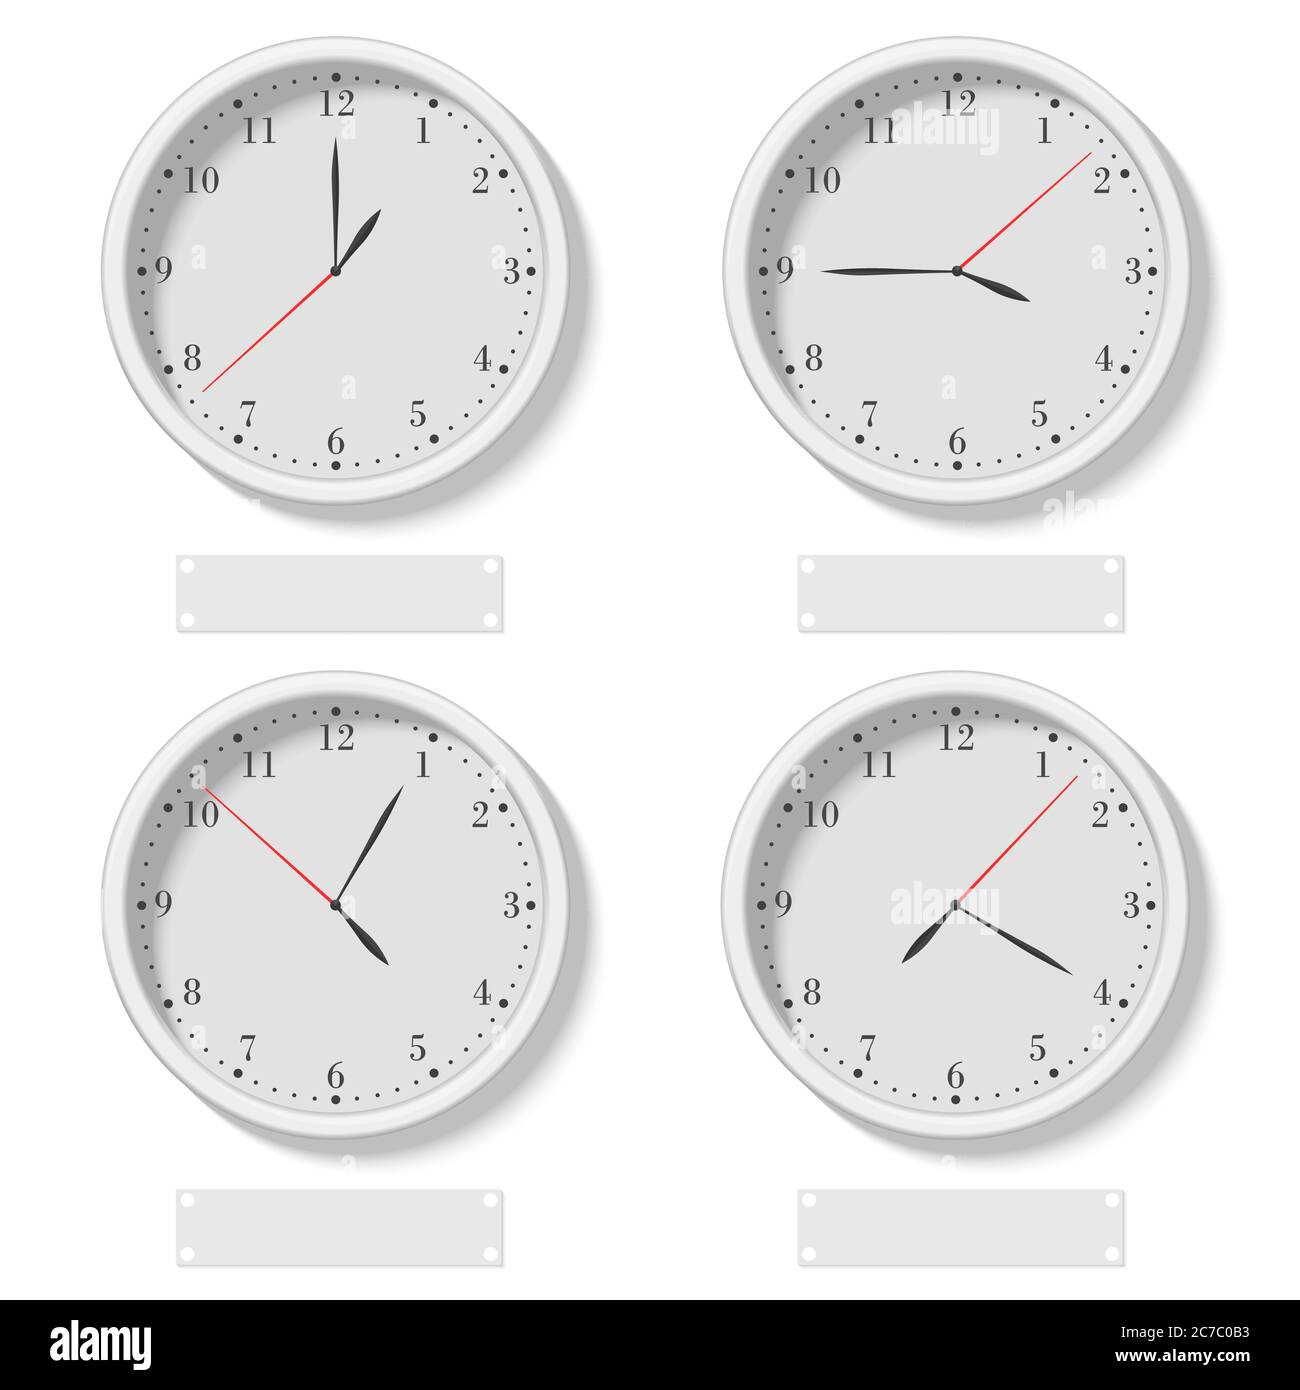 Jeu d'horloges rondes classiques réalistes montrant différents moments. Horloge universelle, illustration de vecteur de fuseau horaire différent Illustration de Vecteur